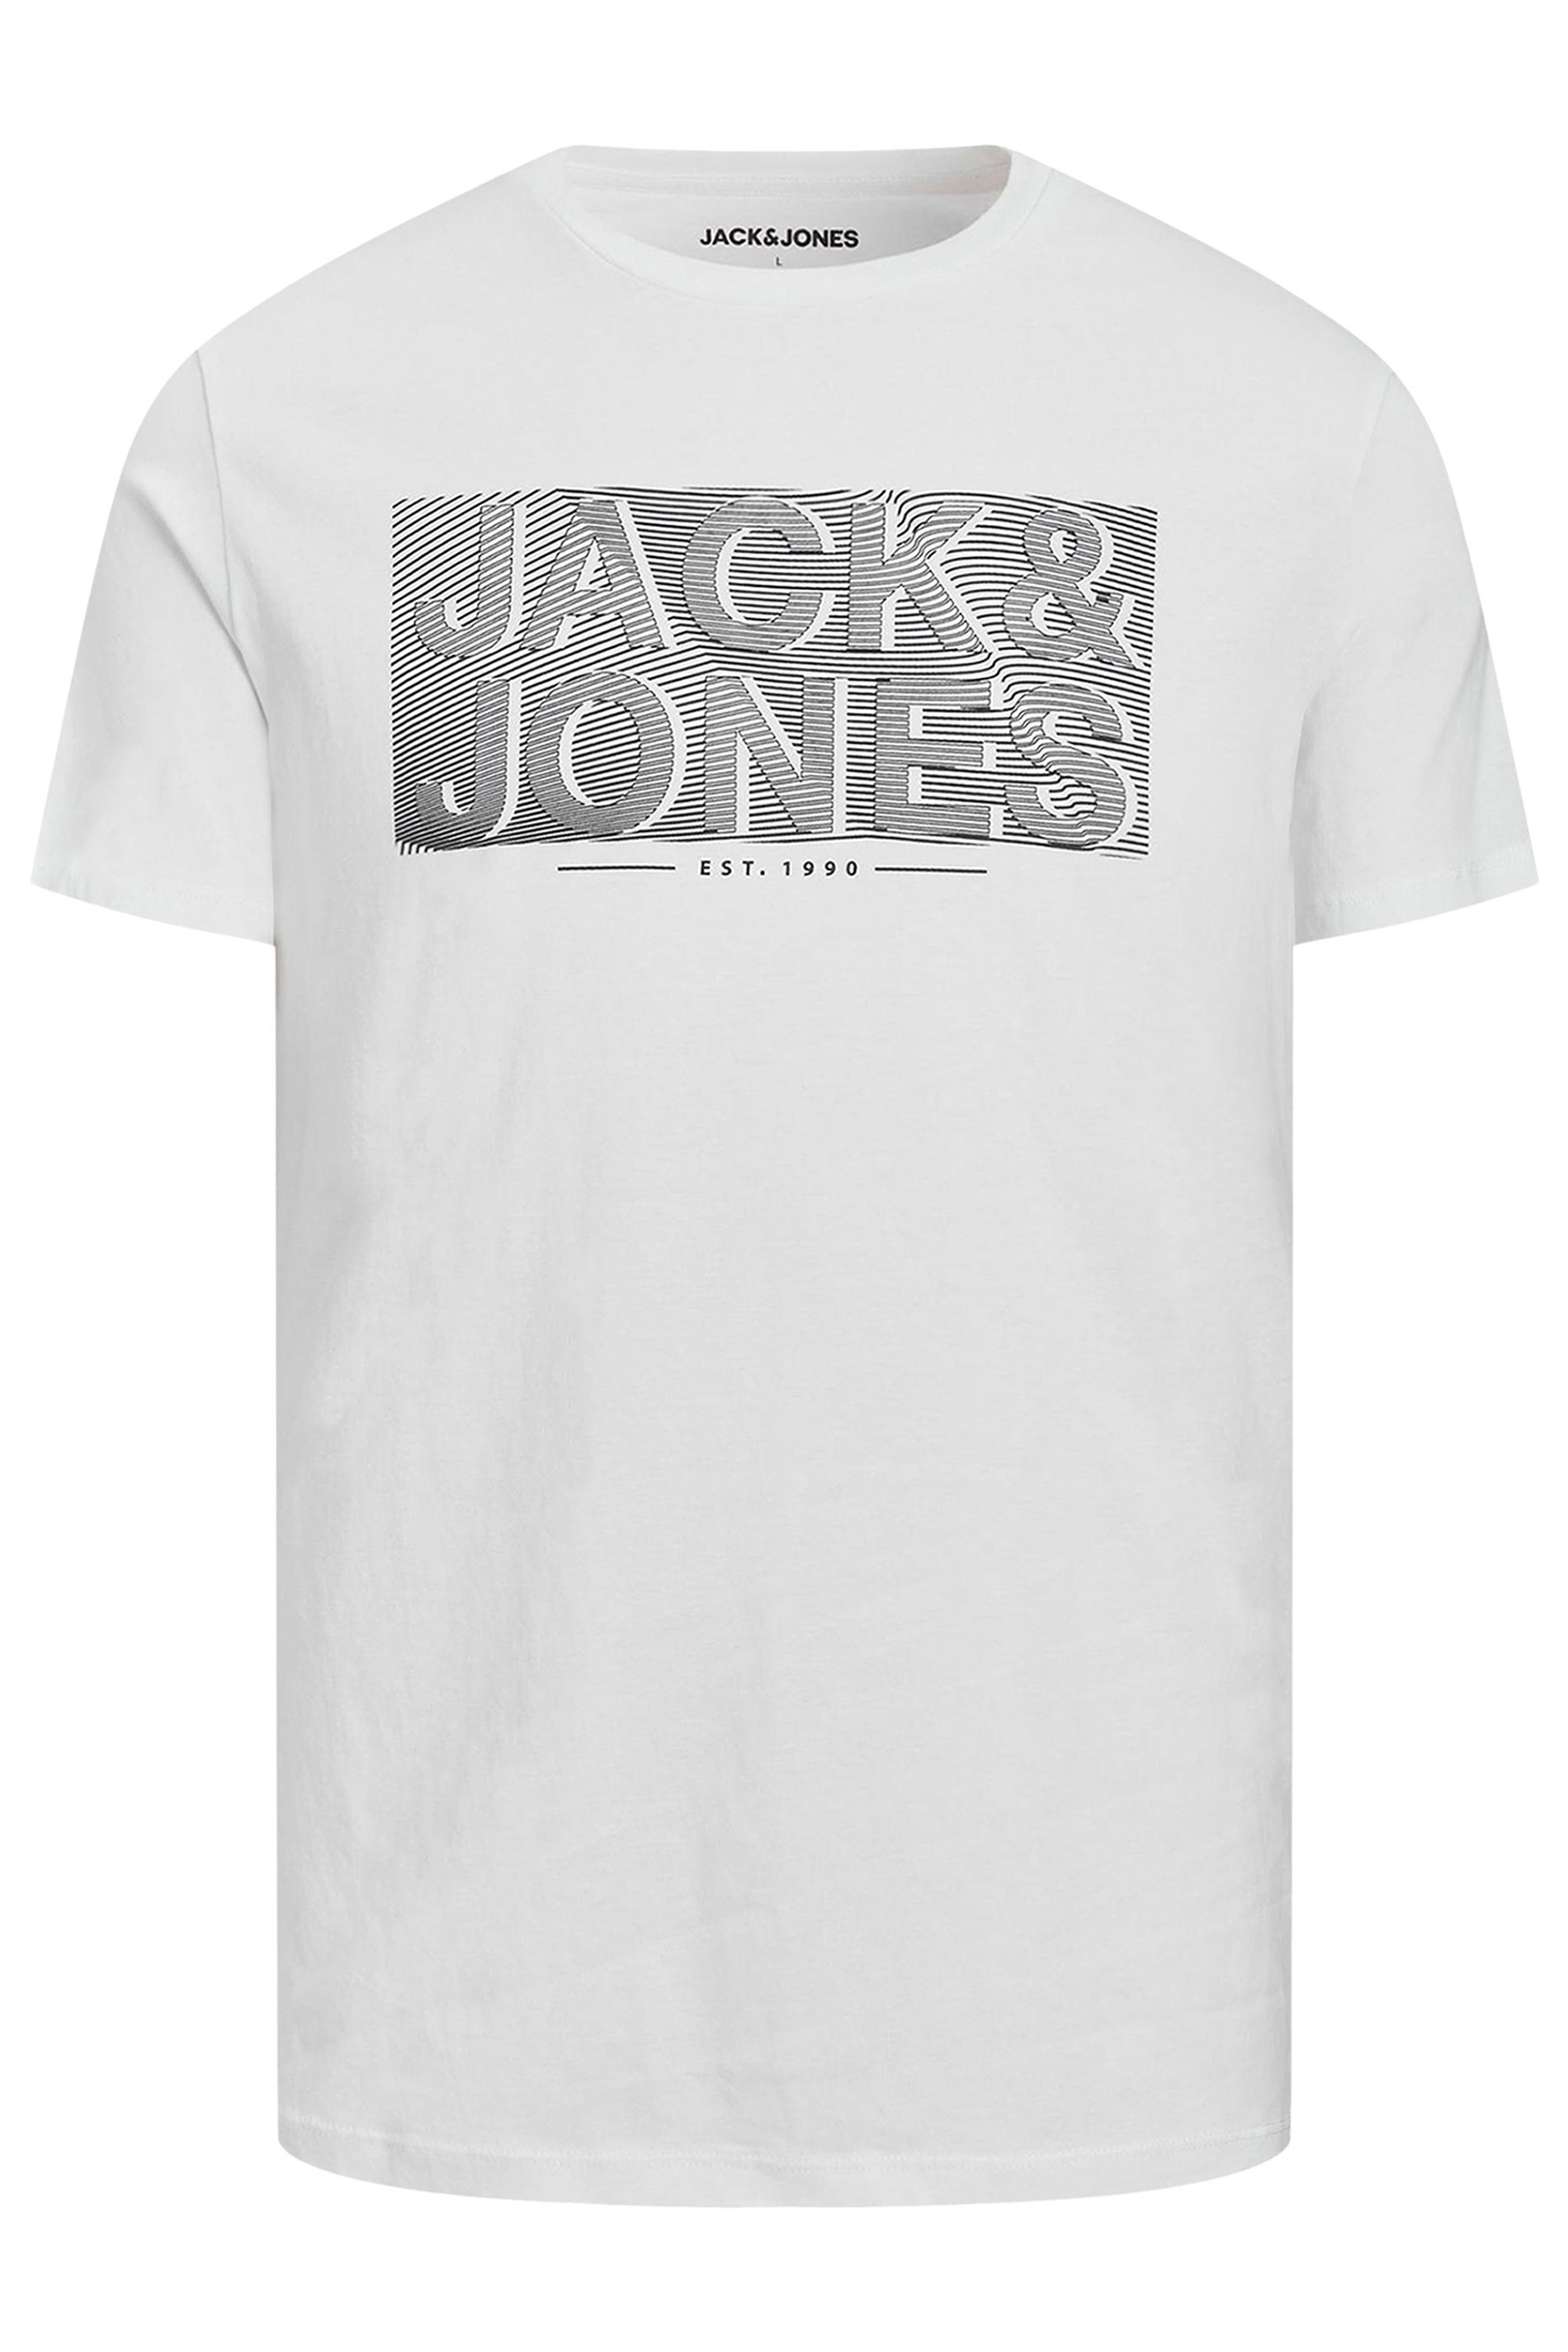 JACK & JONES Big & Tall White T-Shirt | BadRhino 2